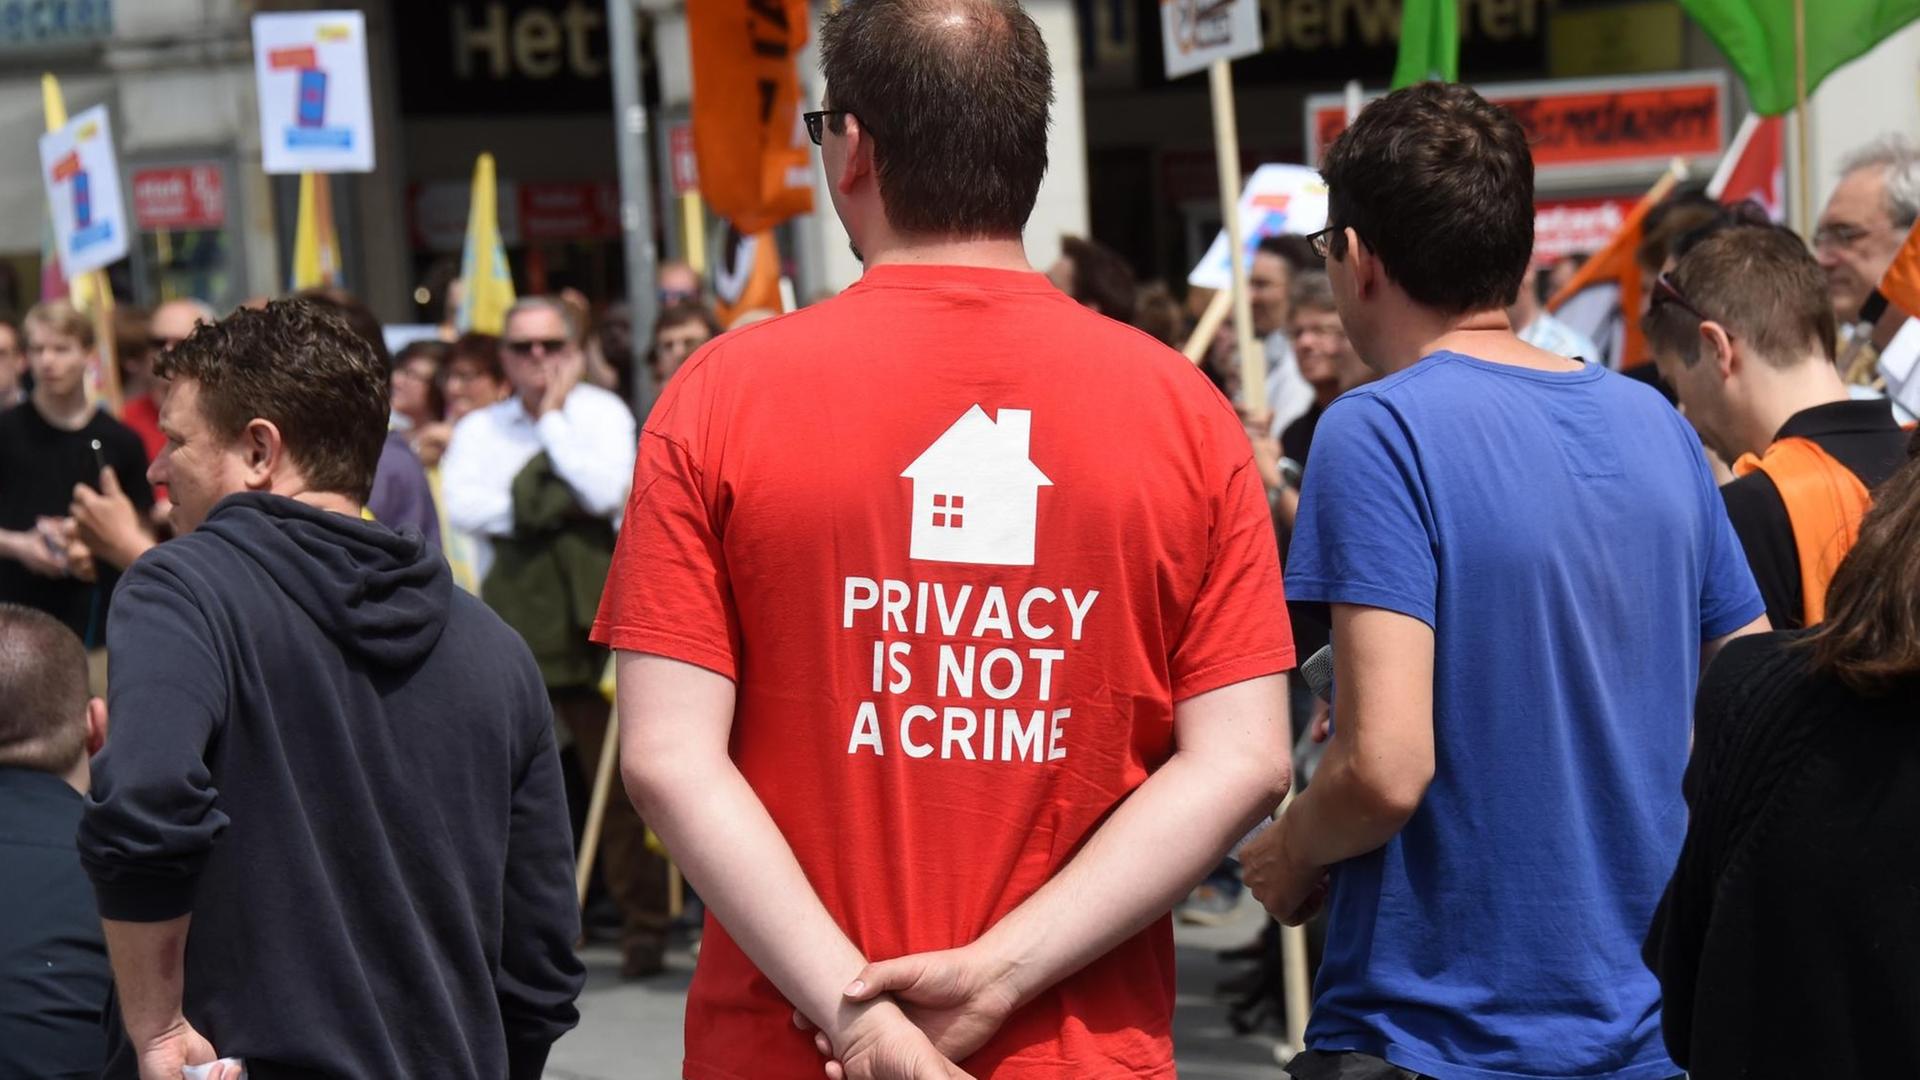 Ein Demonstrant trägt am 26.05.2016 in München (Bayern) bei einer Kundgebung ein T-Shirt mit der Aufschrift "PRIVACY IS NOT A CRIME". Die Teilnehmer gingen auf die Straße um unter dem Motto "Freiheit statt Angst! Stoppt den Überwachungswahn!" für mehr Datenschutz zu demonstrieren.